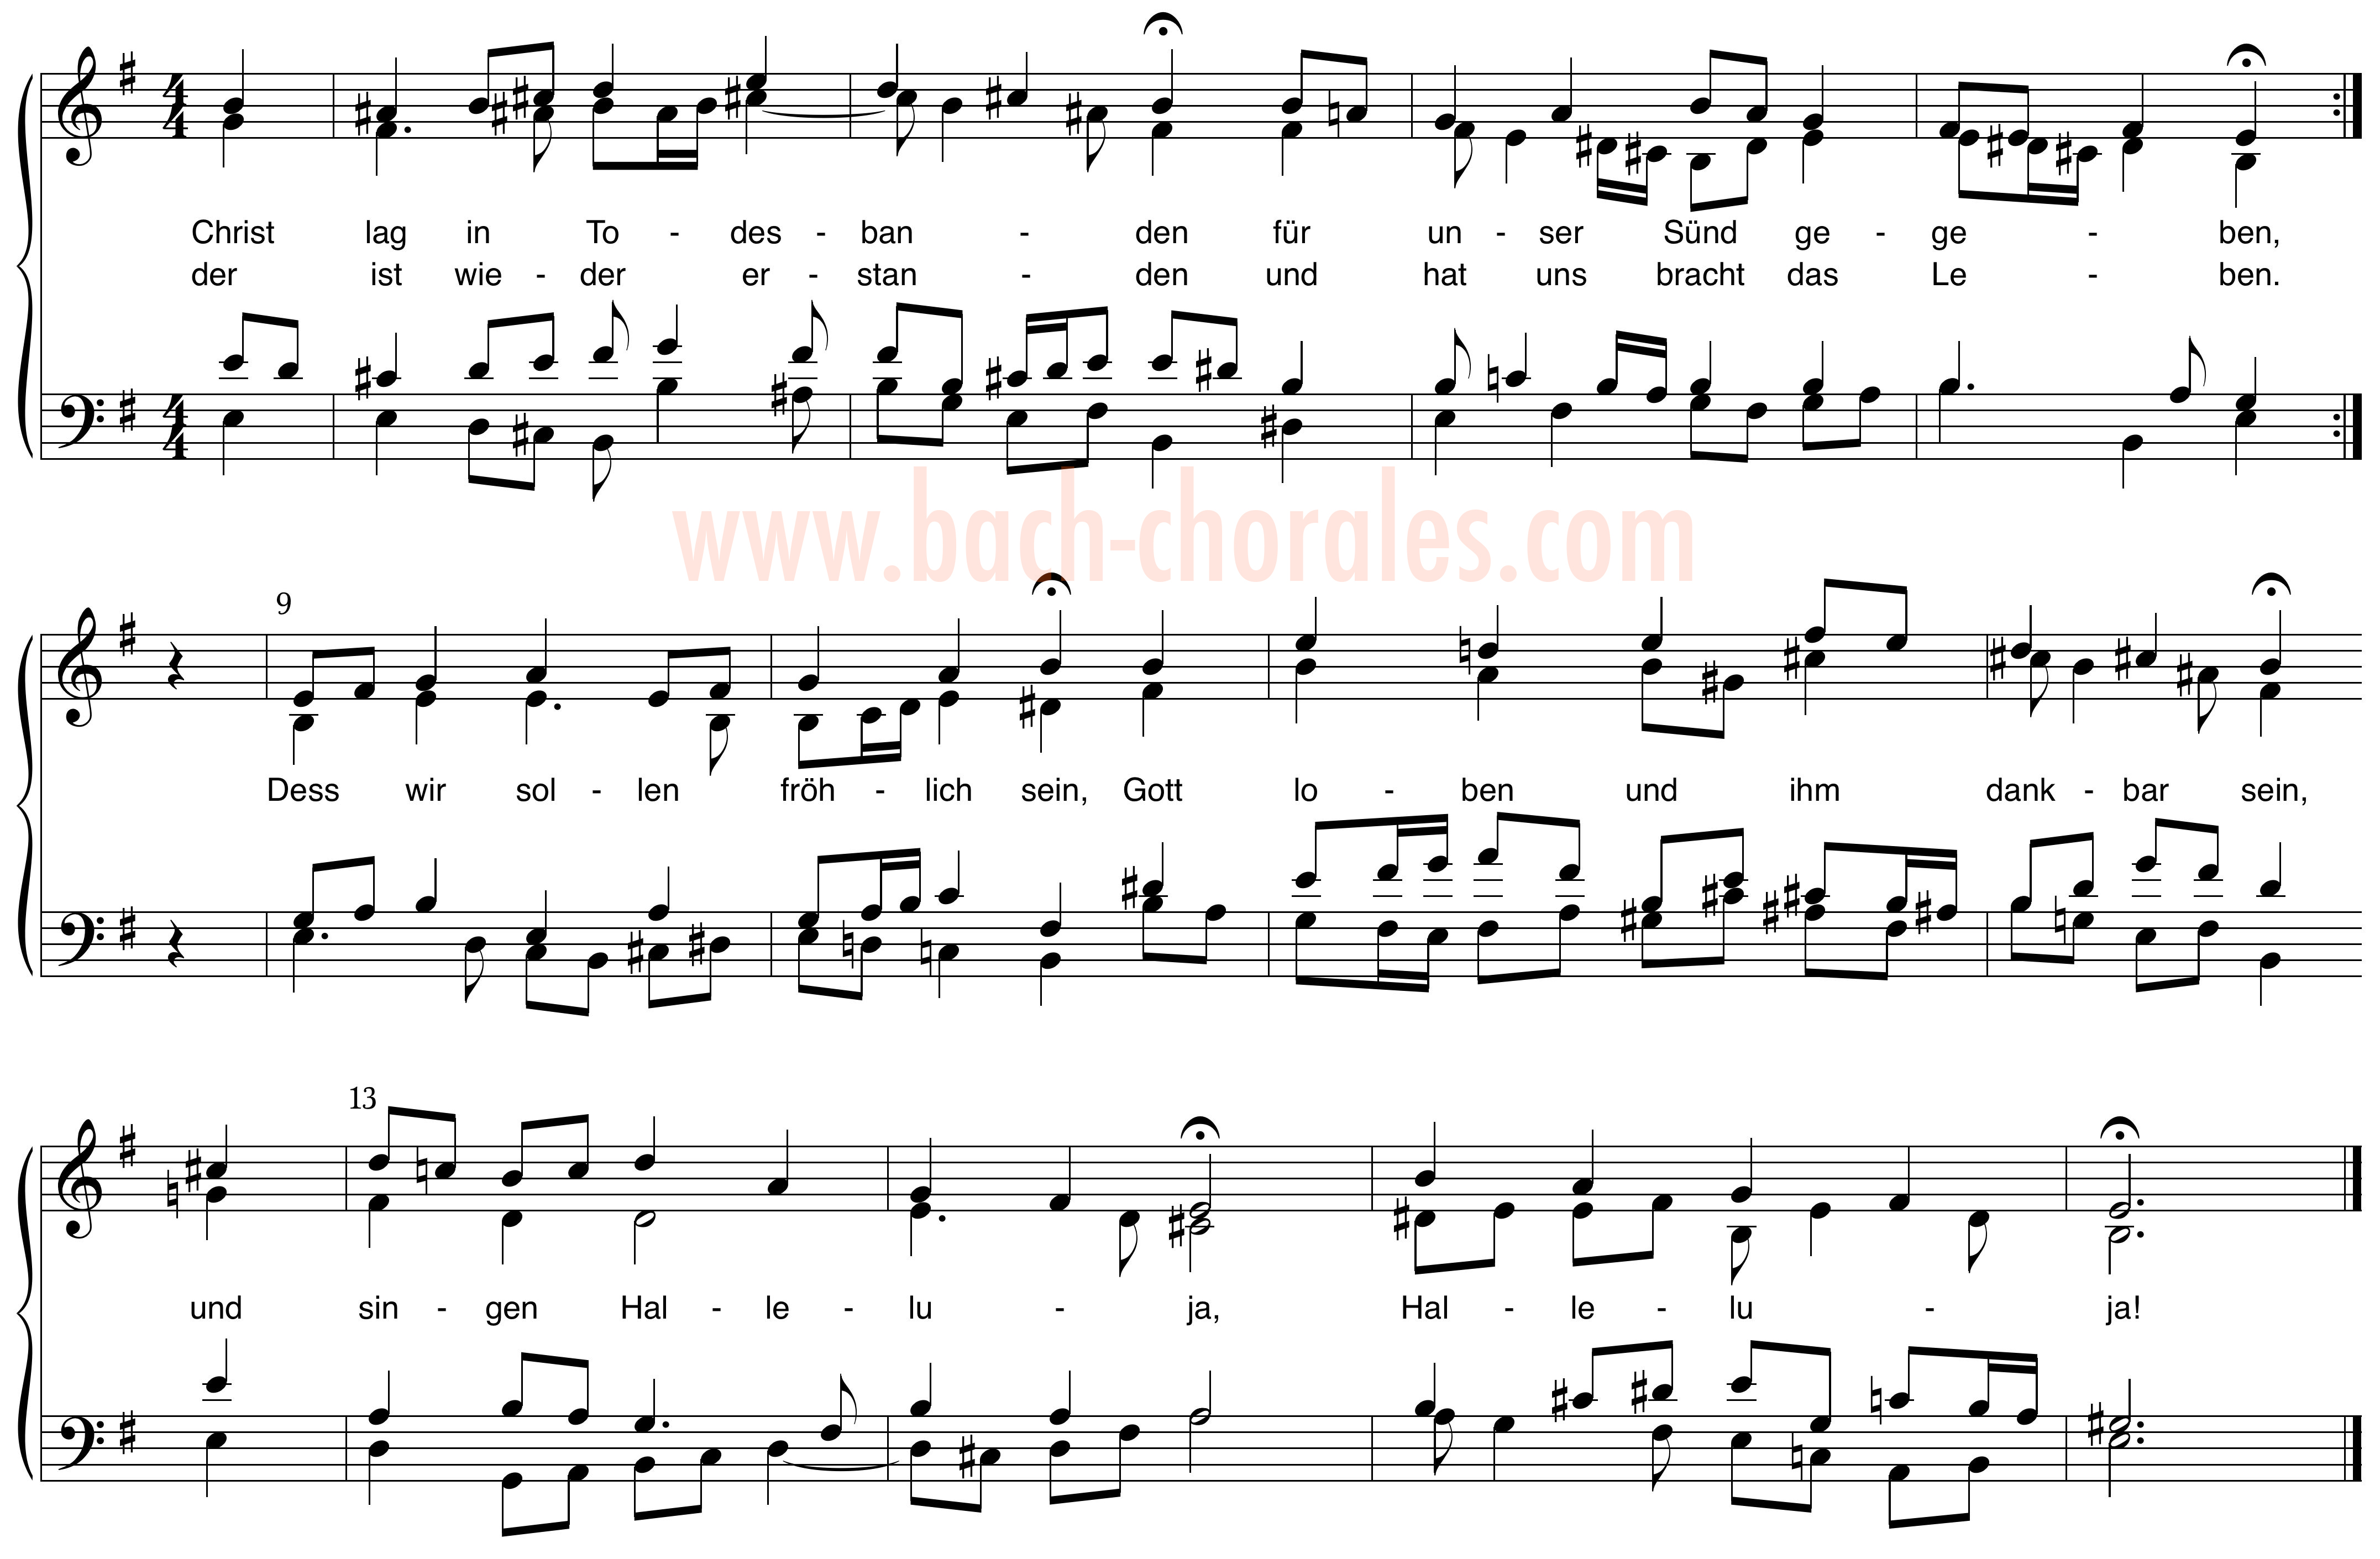 notenbeeld BWV 278 op https://www.bach-chorales.com/